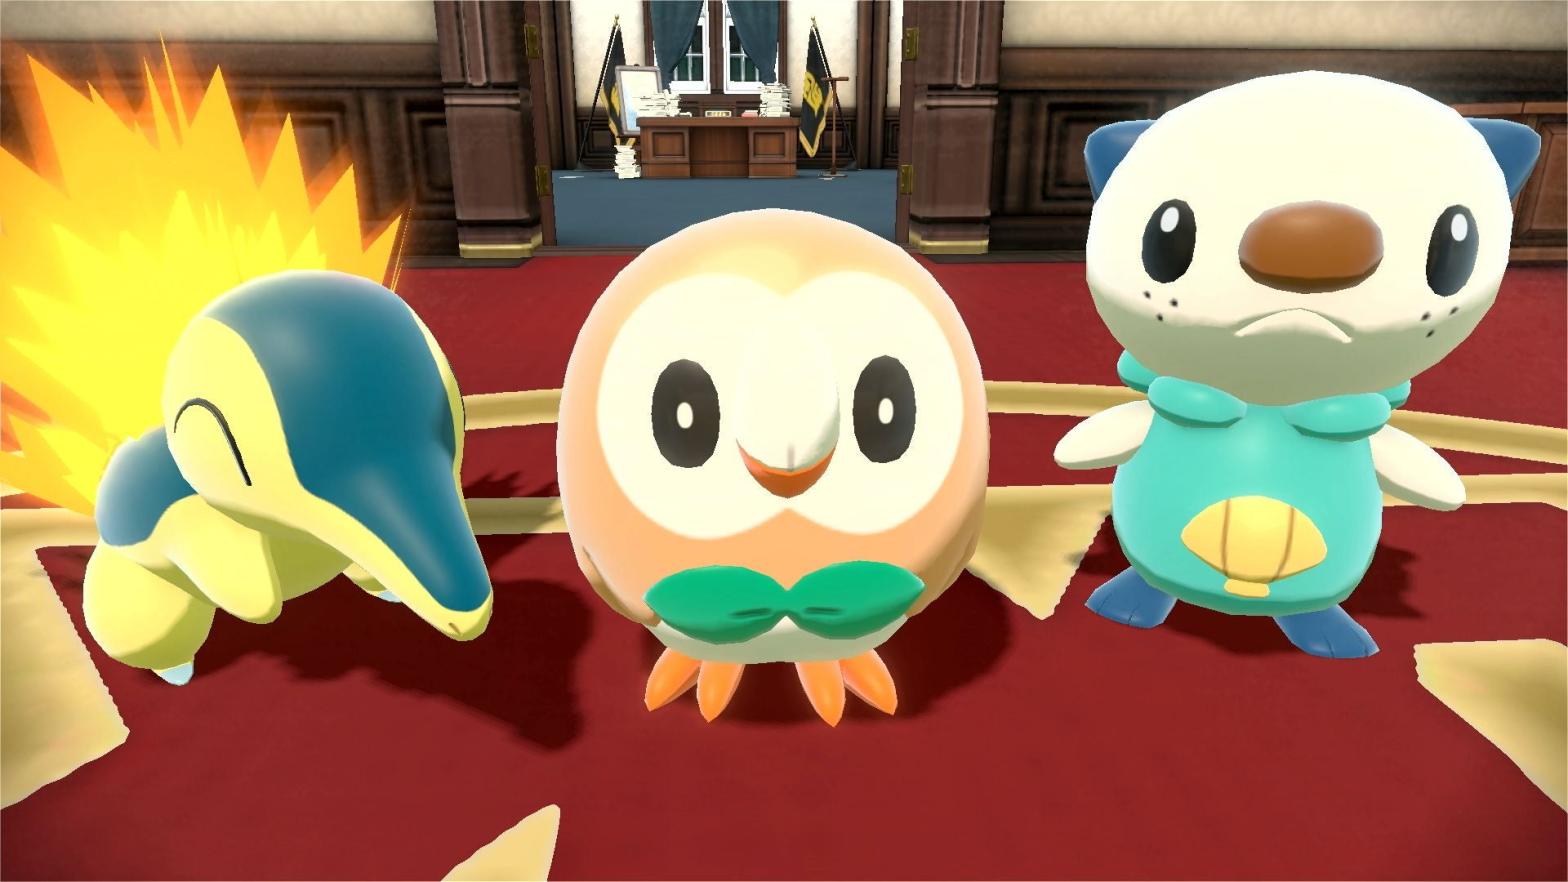 Rowlet is shaped like a friend. (Screenshot: The Pokémon Company)